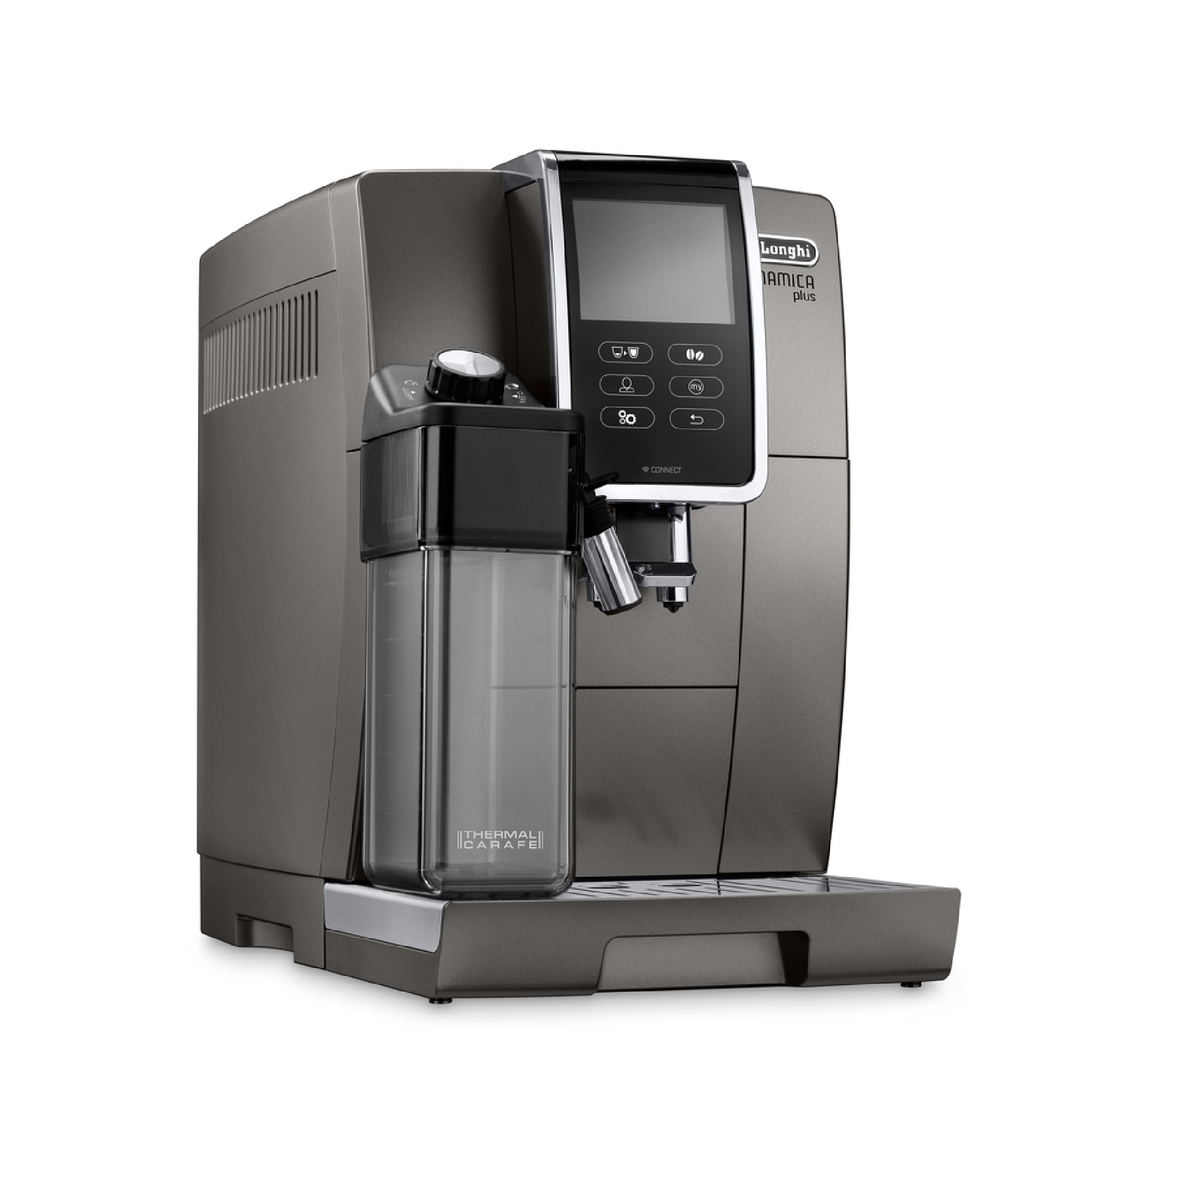 De'Longhi Dinamica Plus Fully Automatic Espresso Machine - Titanium